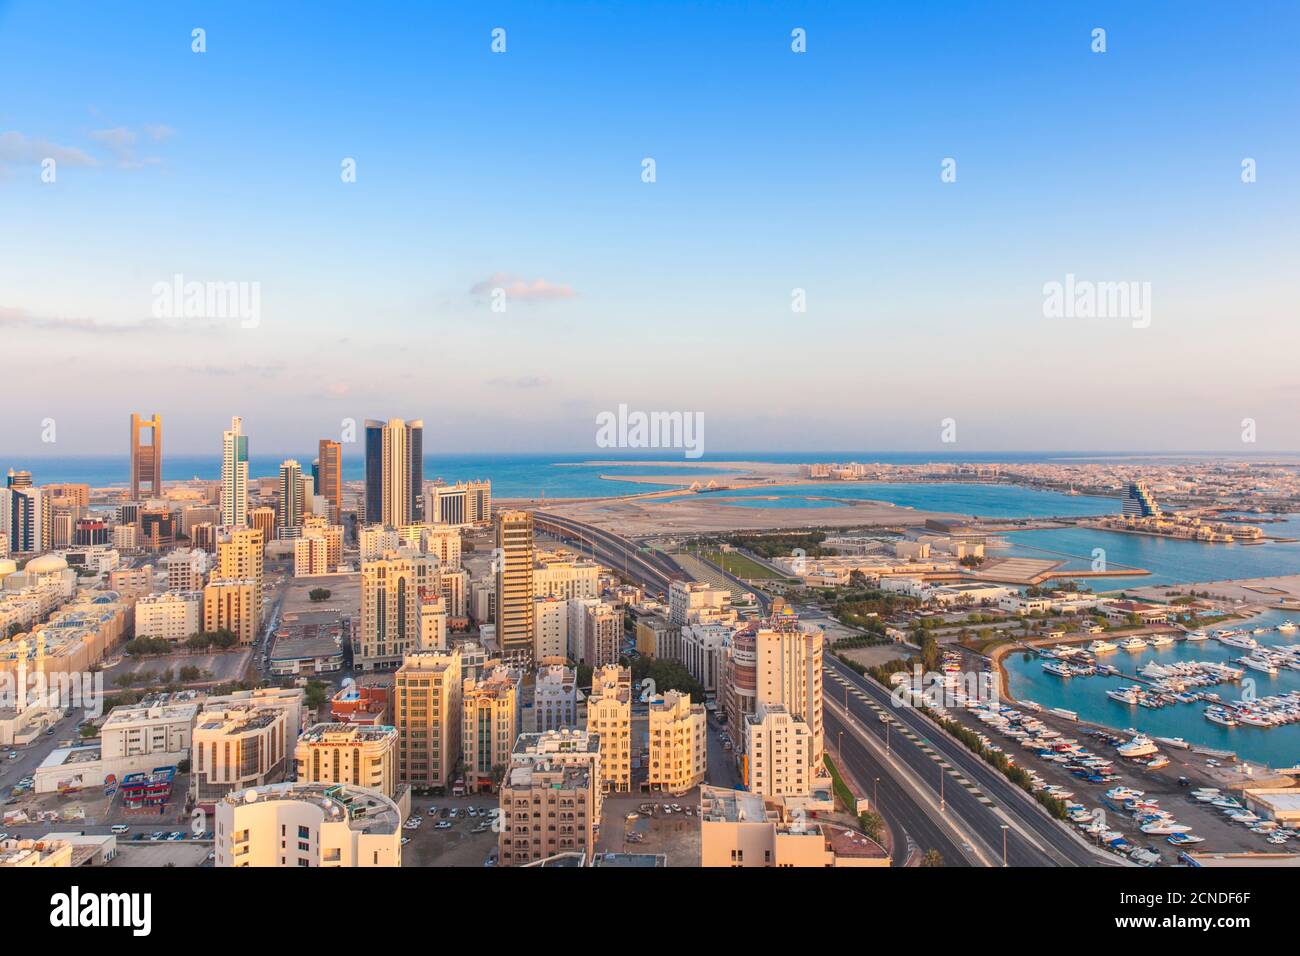 City skyline, Manama, Bahrain, Middle East Stock Photo